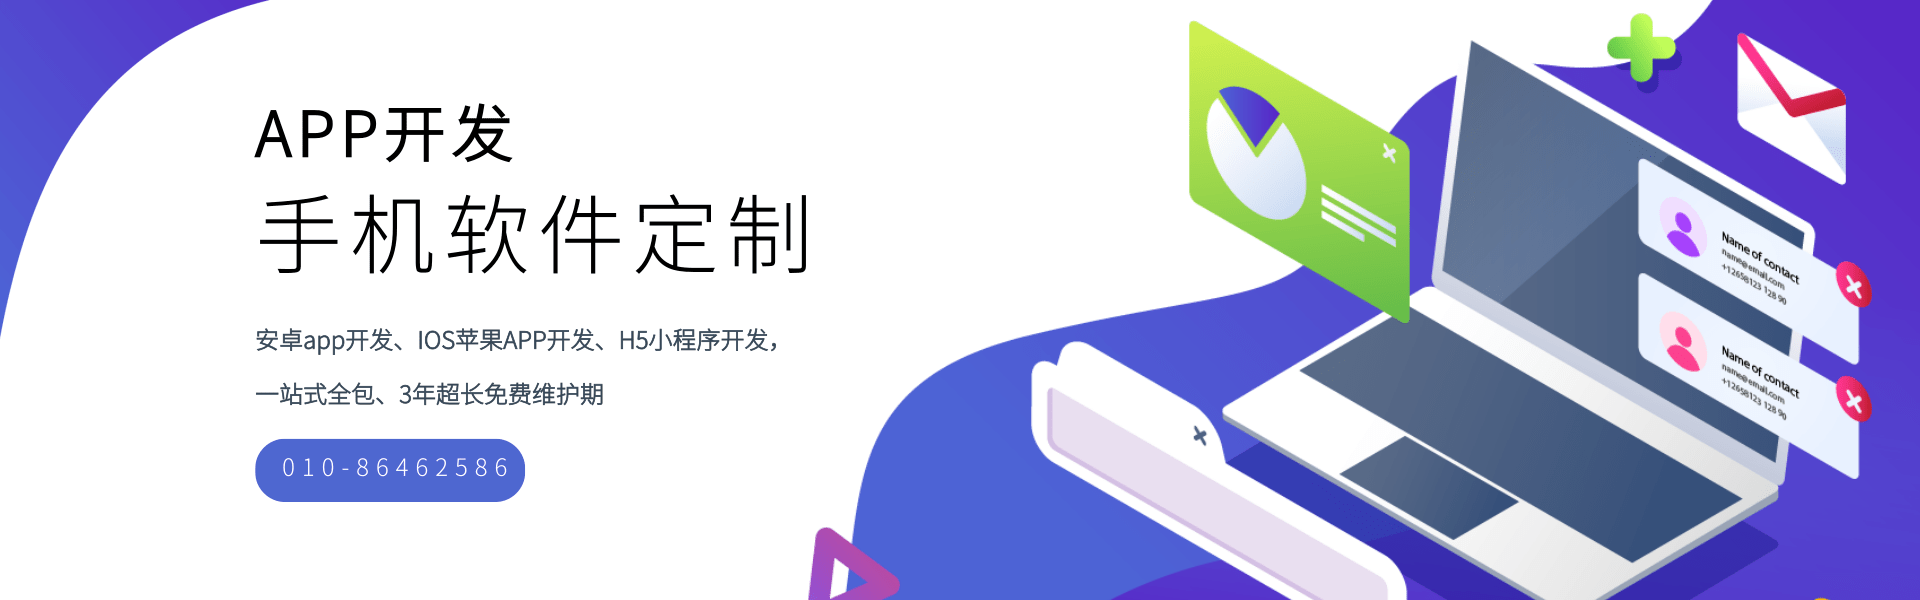 天品互联北京APP开发公司-轮播图